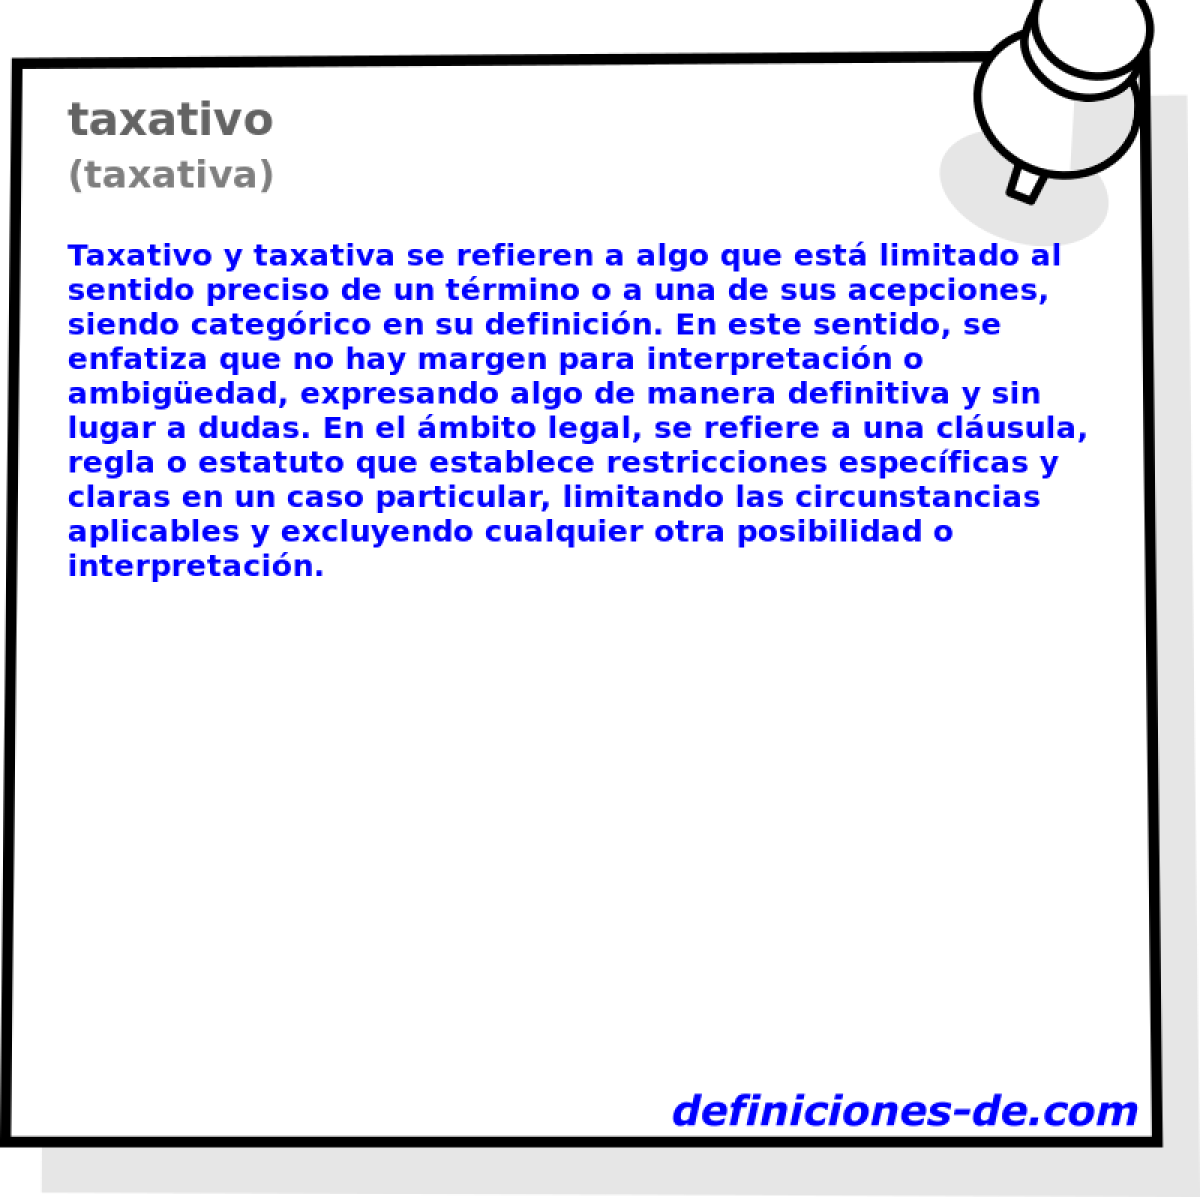 taxativo (taxativa)